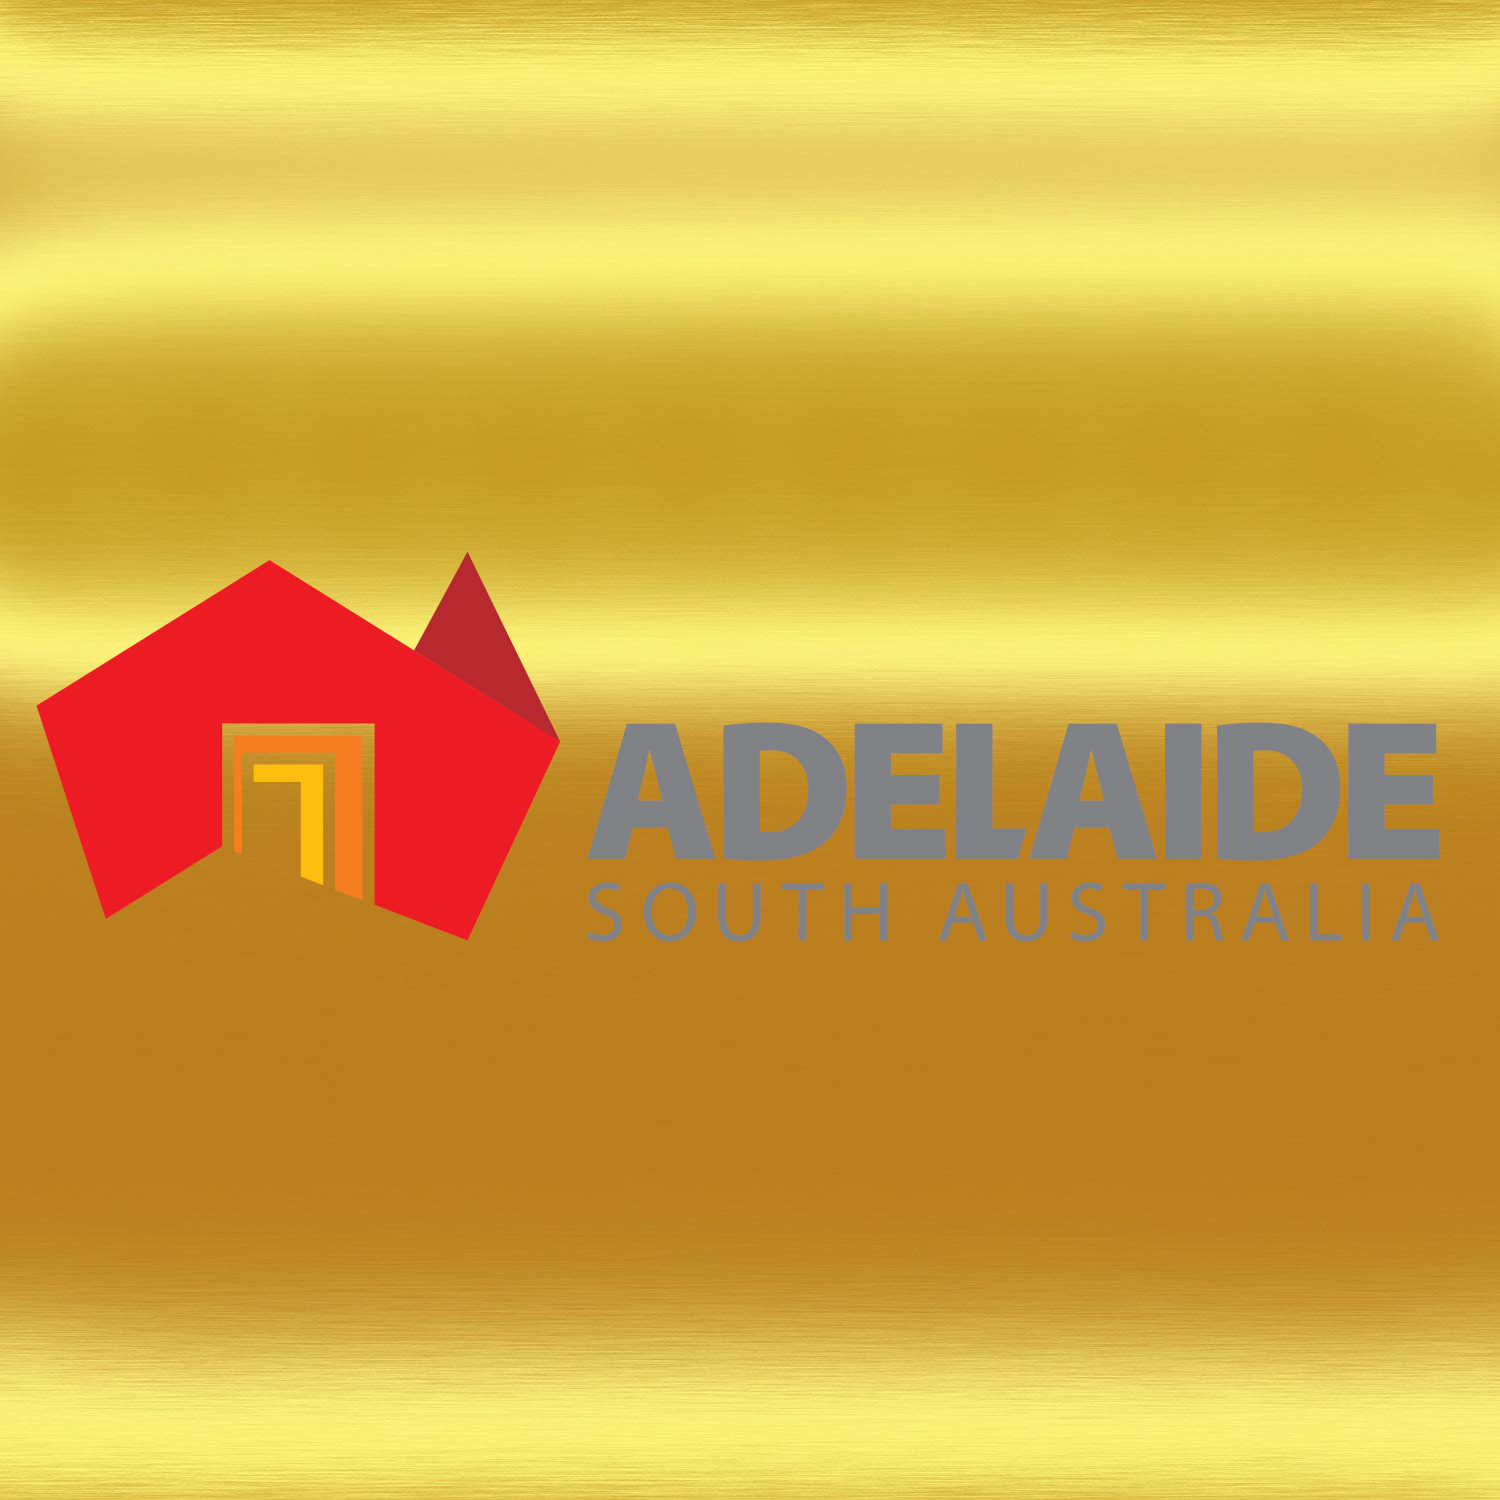 Adelaide logo.jpg